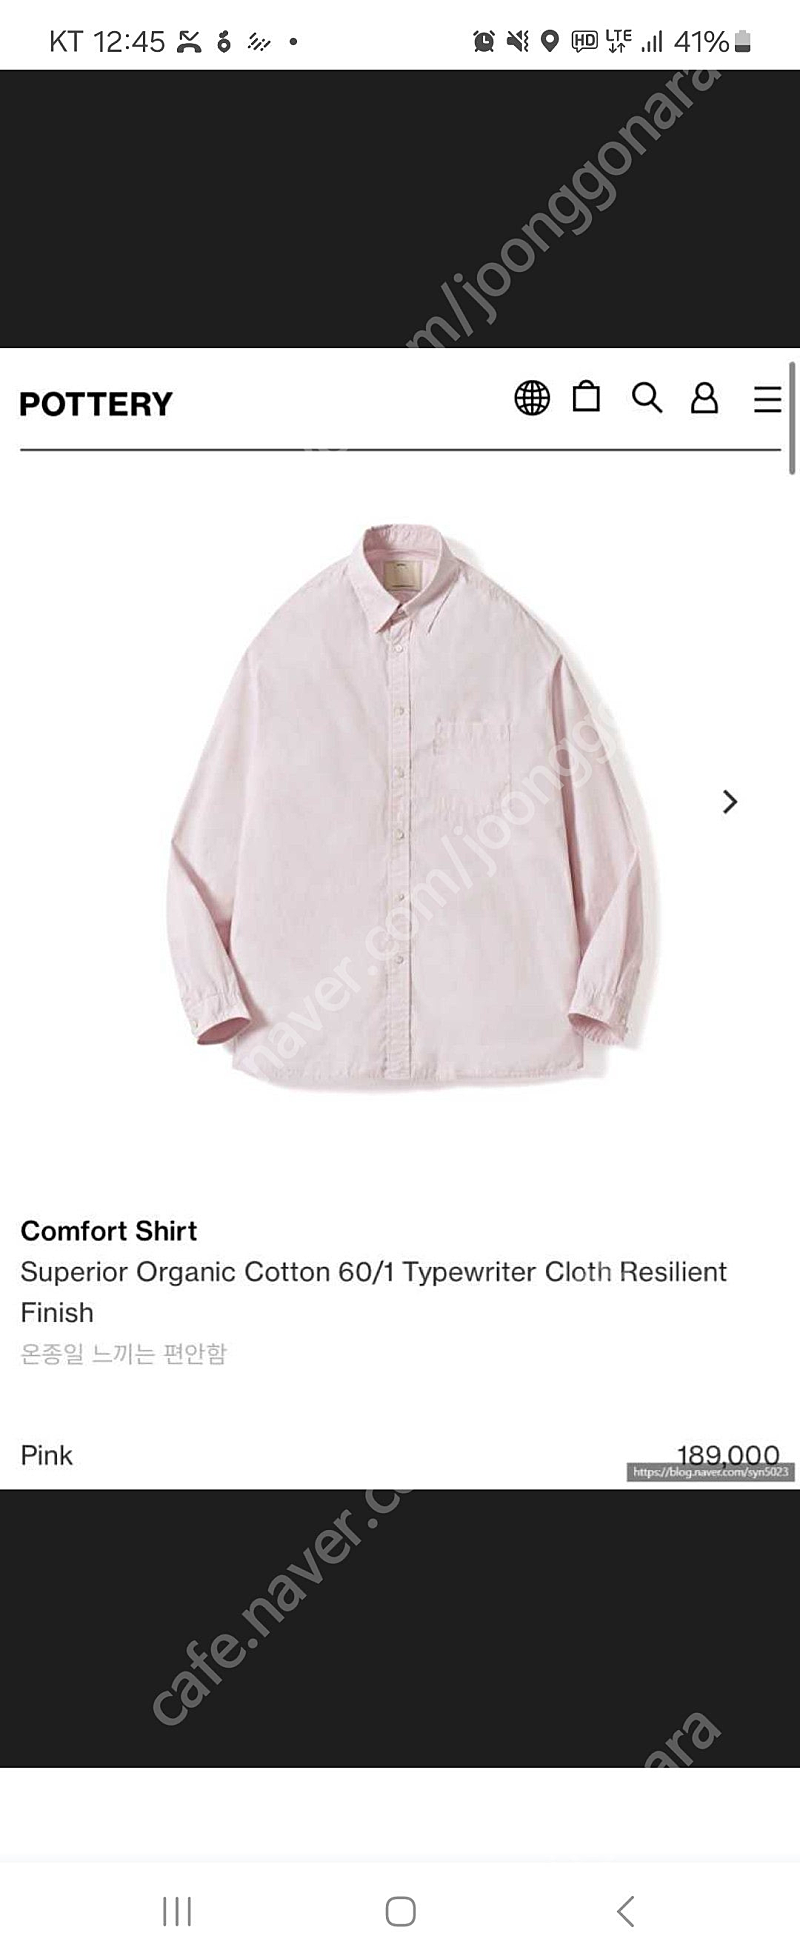 포터리 컴포트 셔츠 핑크 사이즈 1 판매.